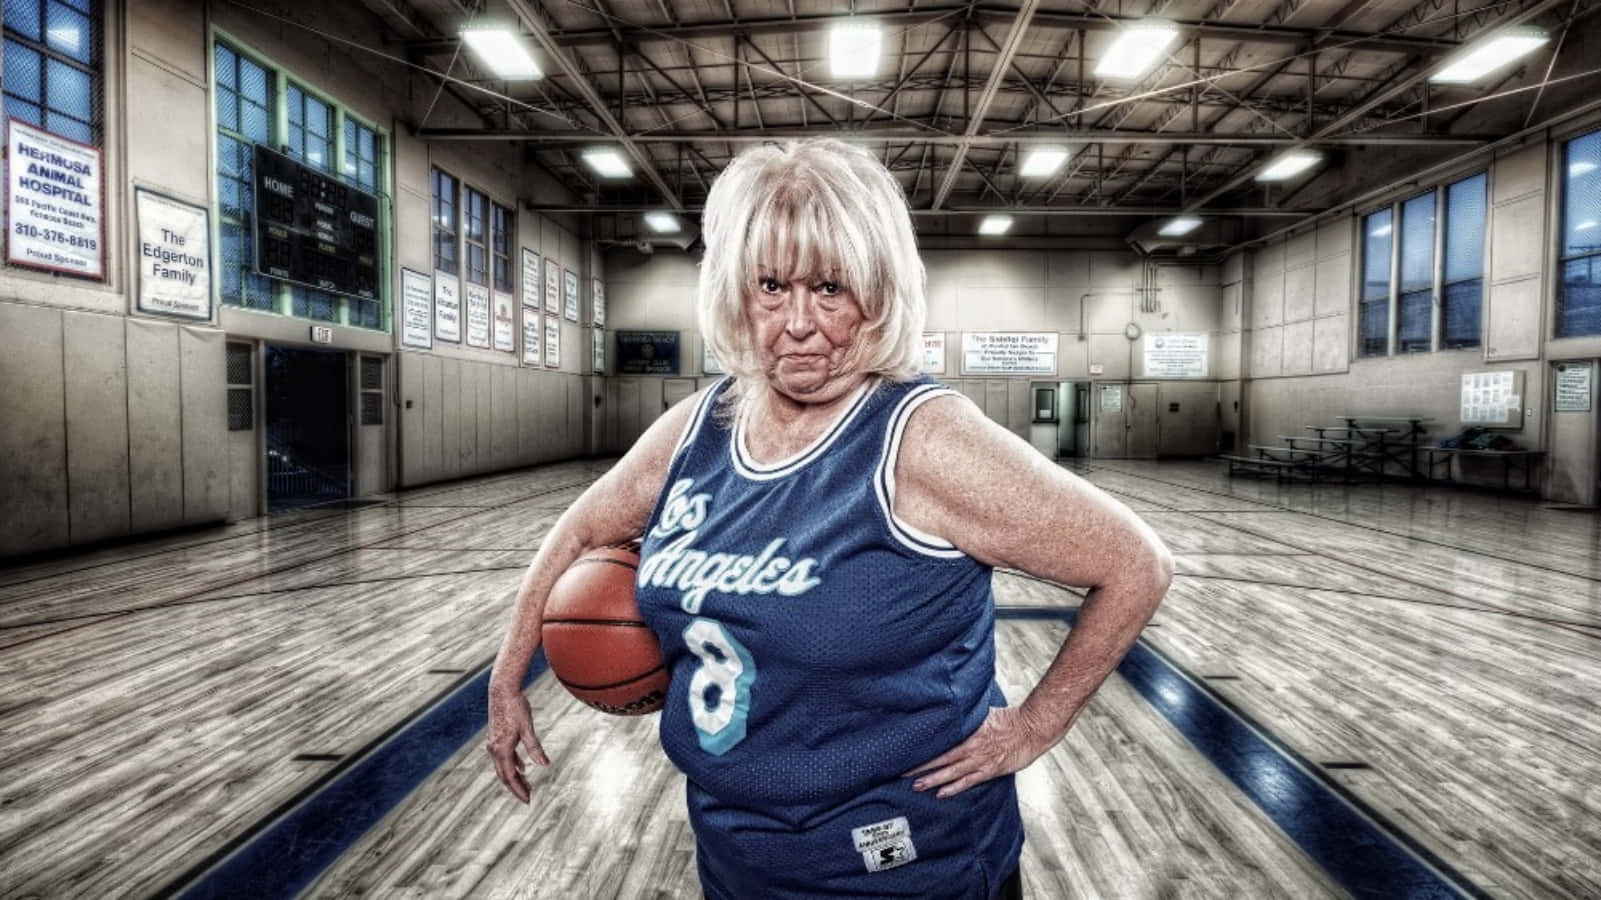 Divertidasfotos De Una Anciana Jugando Al Baloncesto.